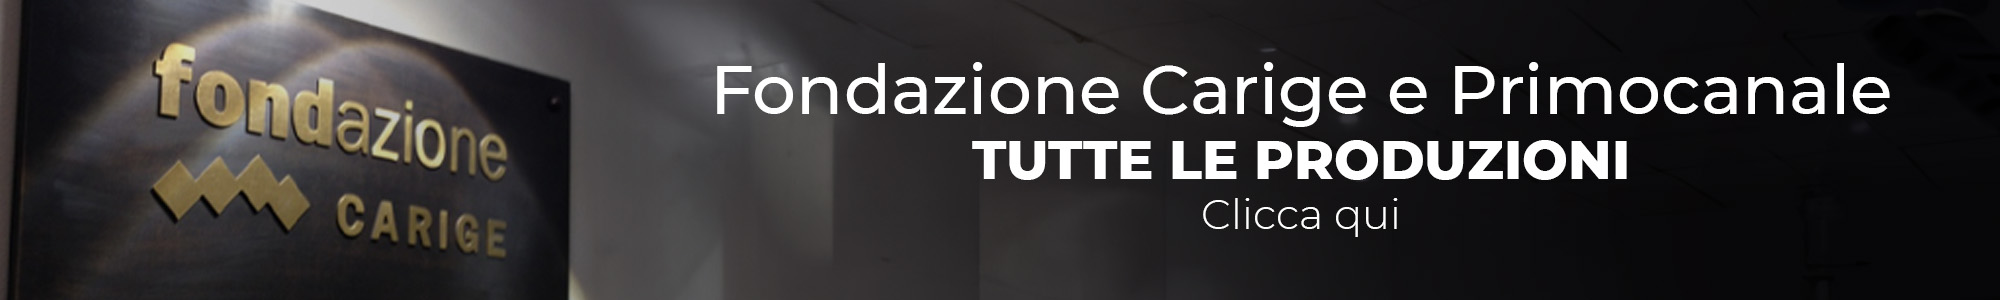 Banner - Fondazione Carige e Primocanale Produzioni